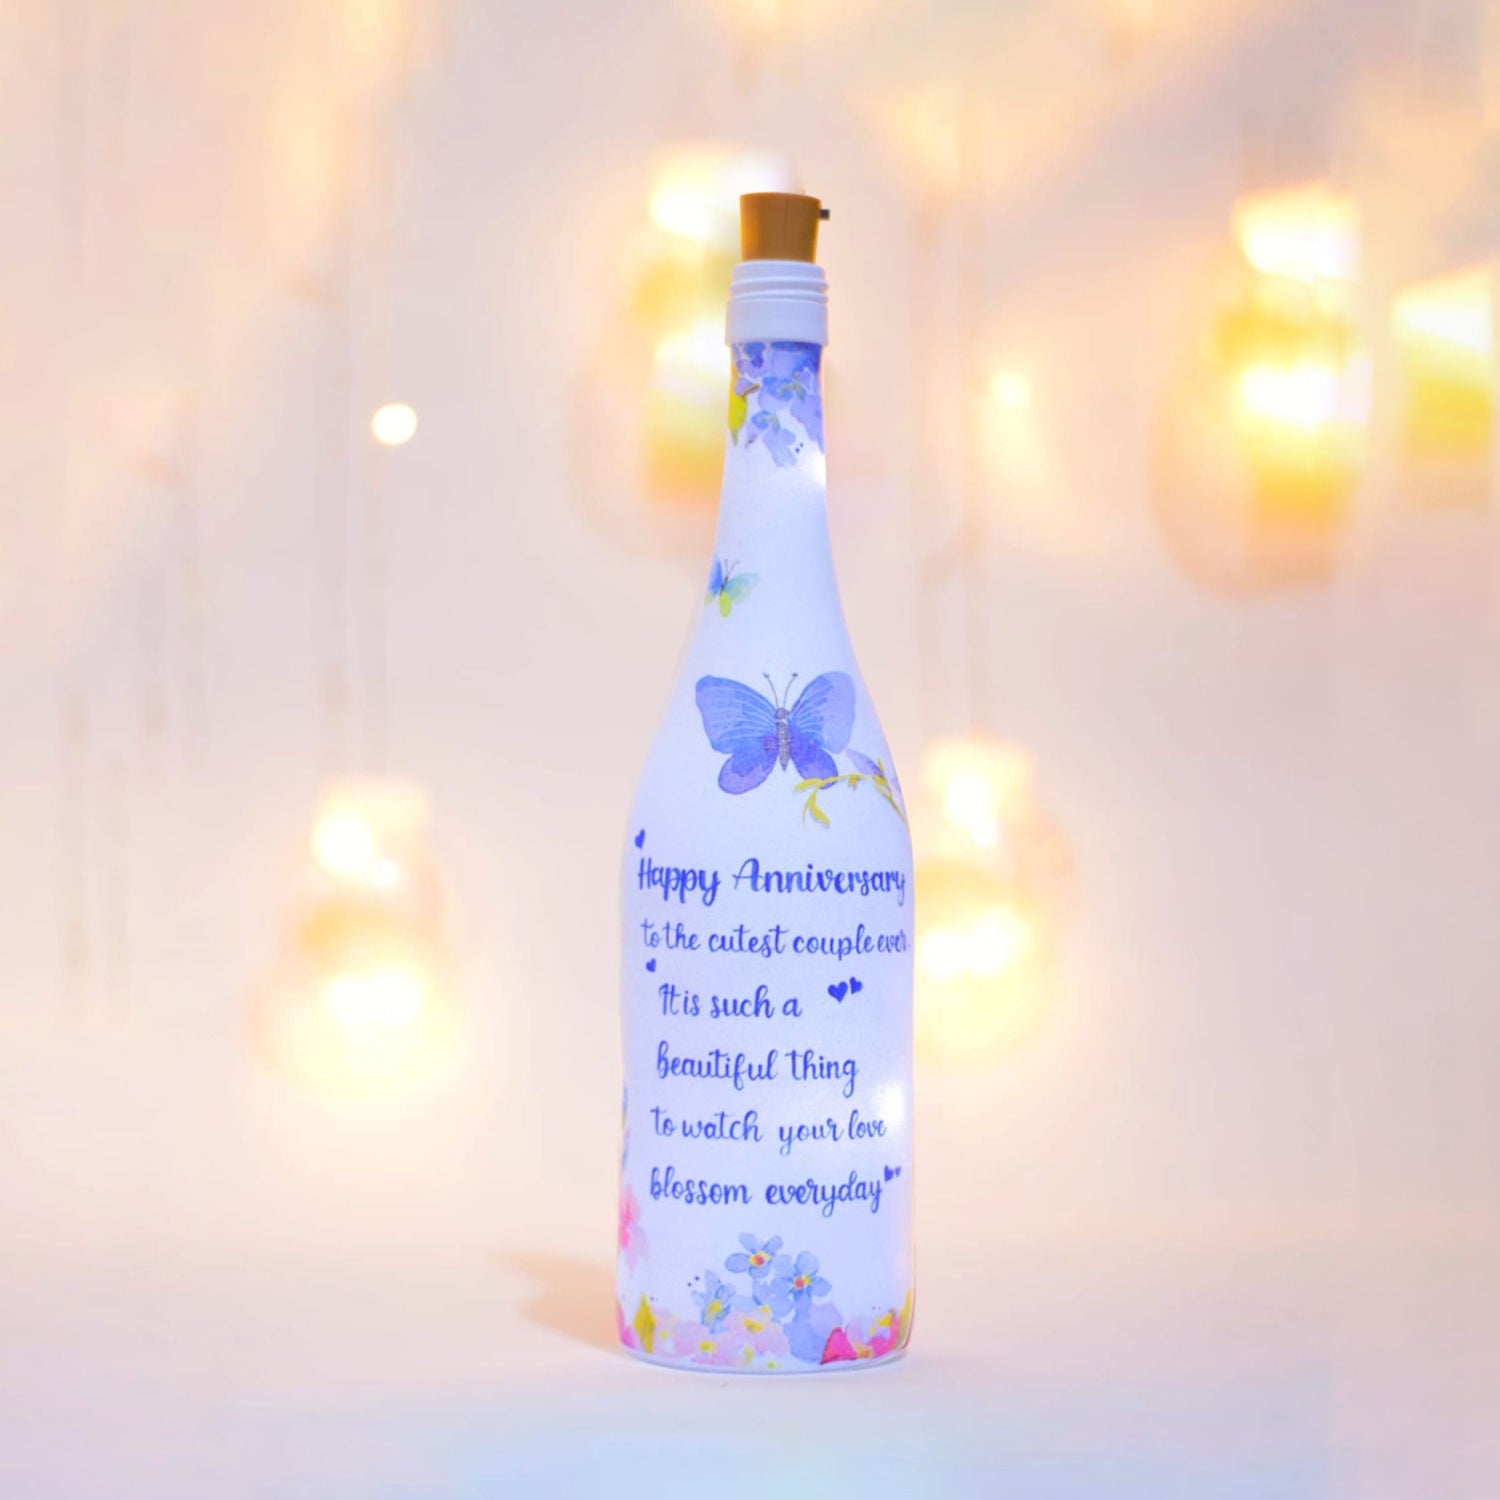 زجاجة مياه لعيد الزواج مصنوعة بطلاء يدوي هدية مميزة